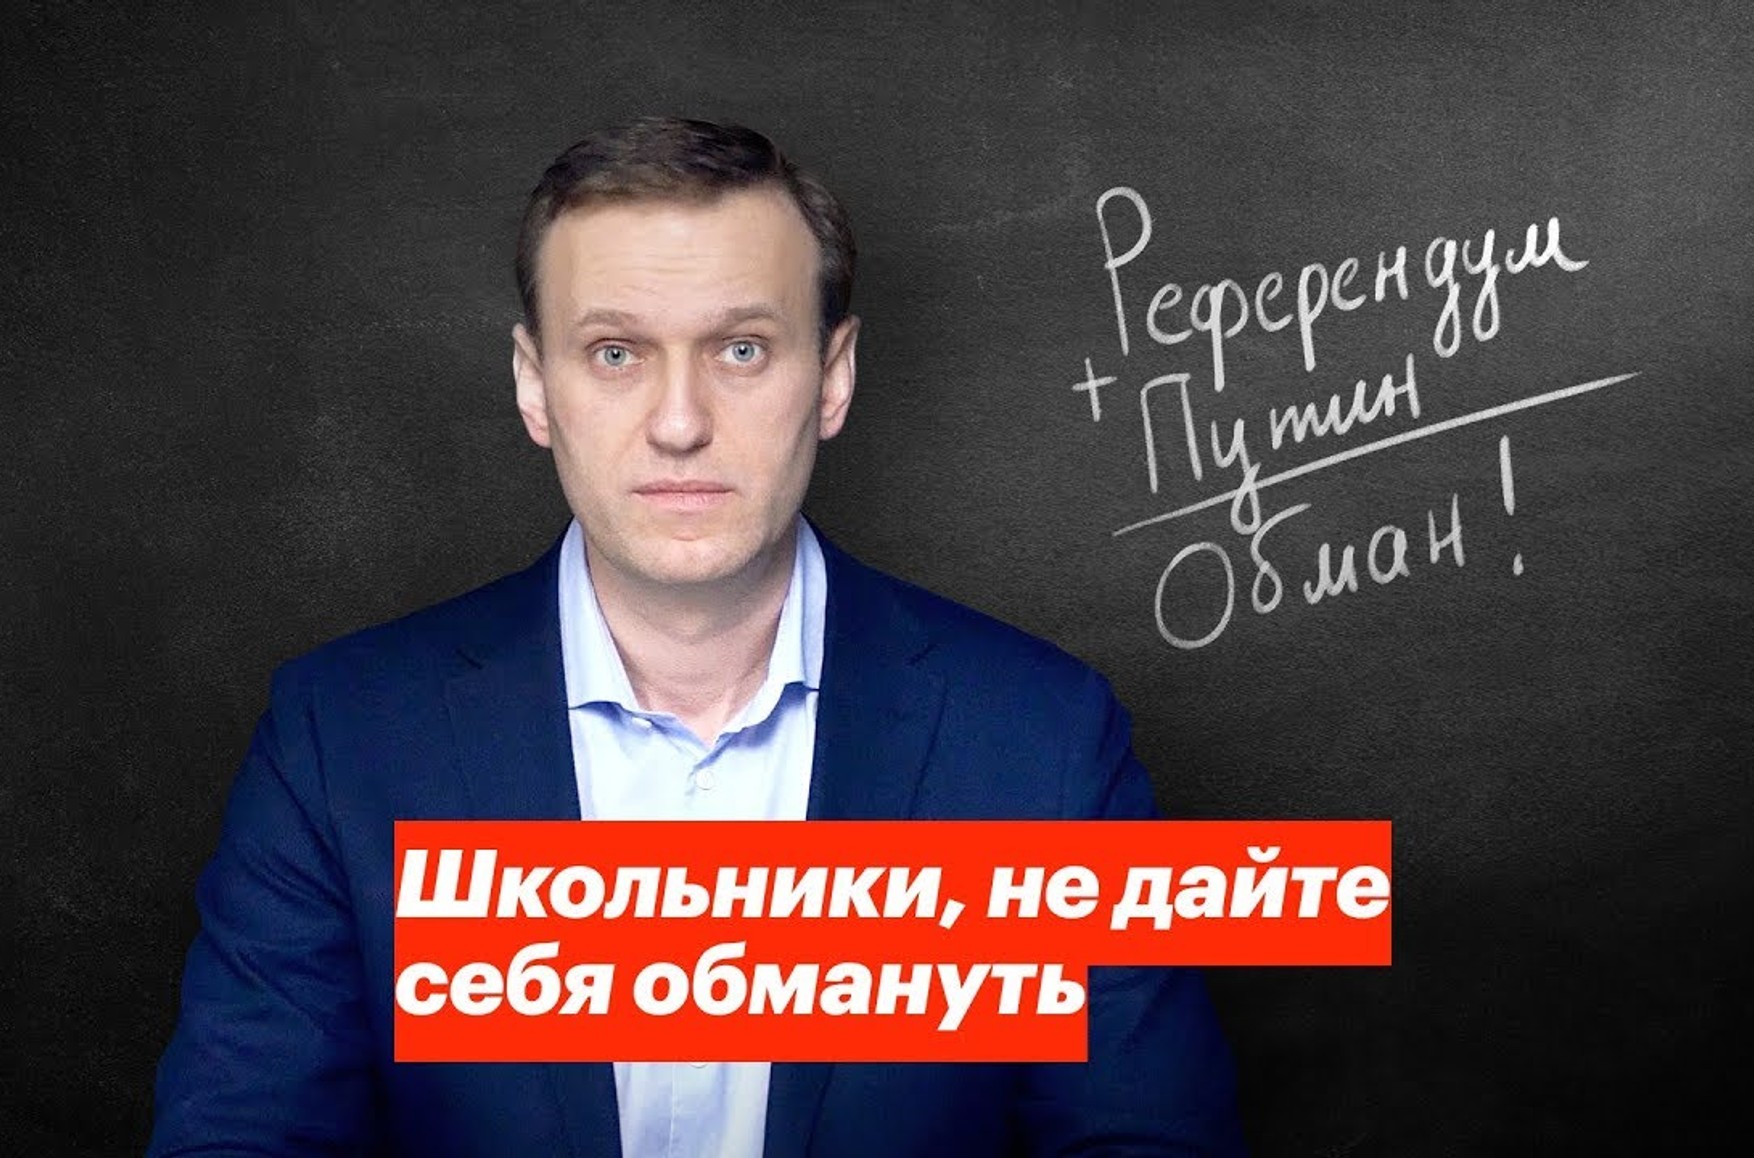 Вчителів в Татарстані просять надати «профілактичні заходи впливу» на школярів, підписаних на групи про Навального і ФБК